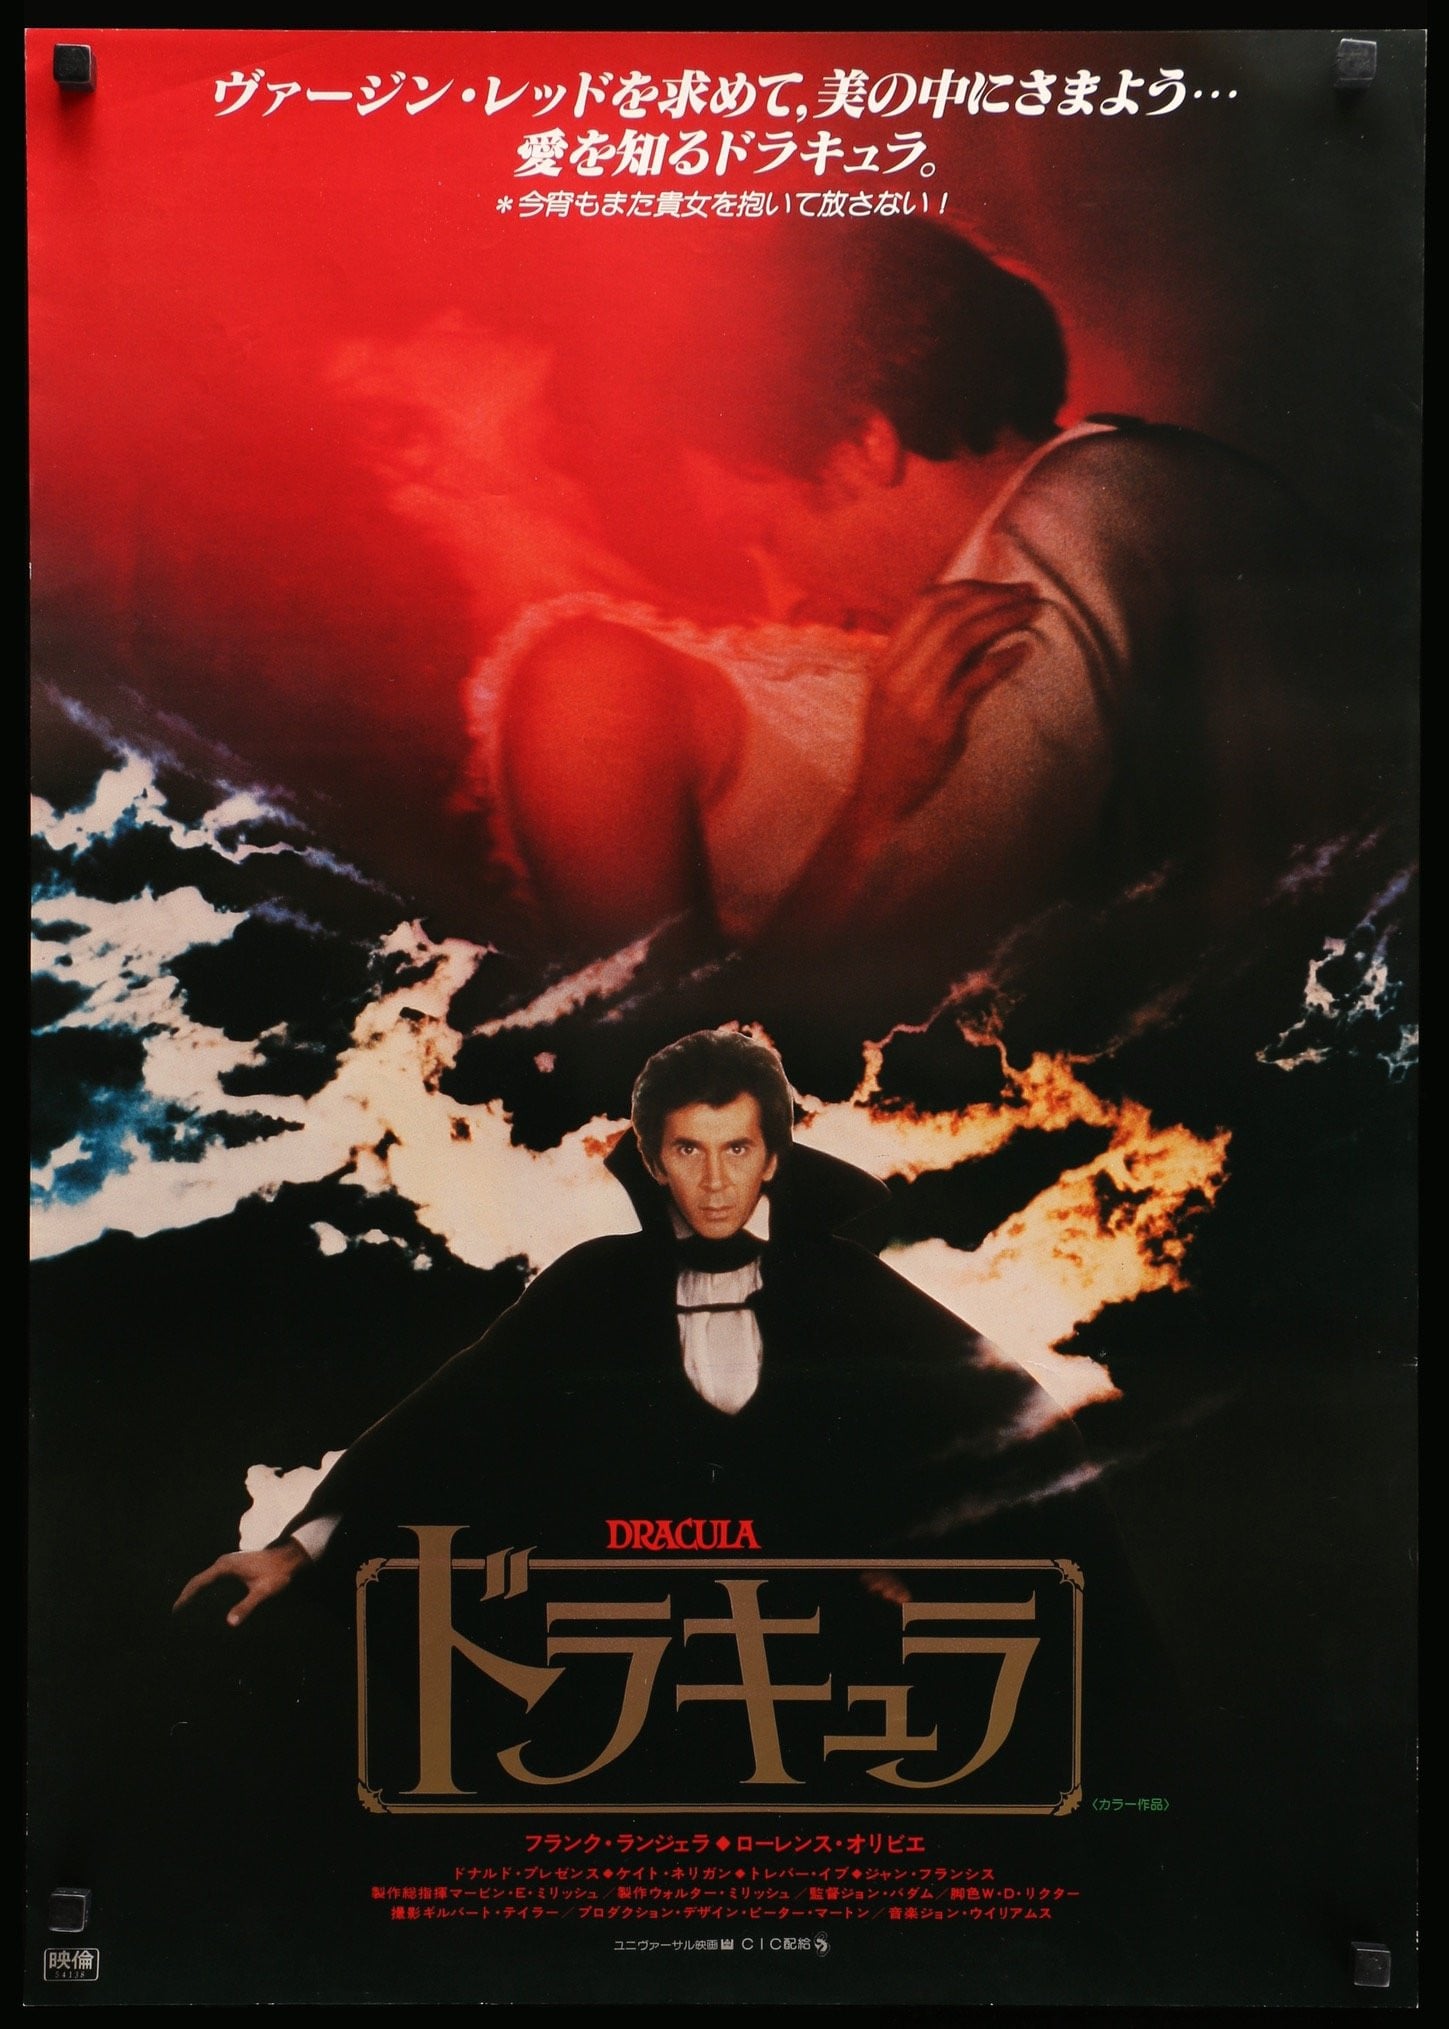 Dracula (1979) original movie poster for sale at Original Film Art